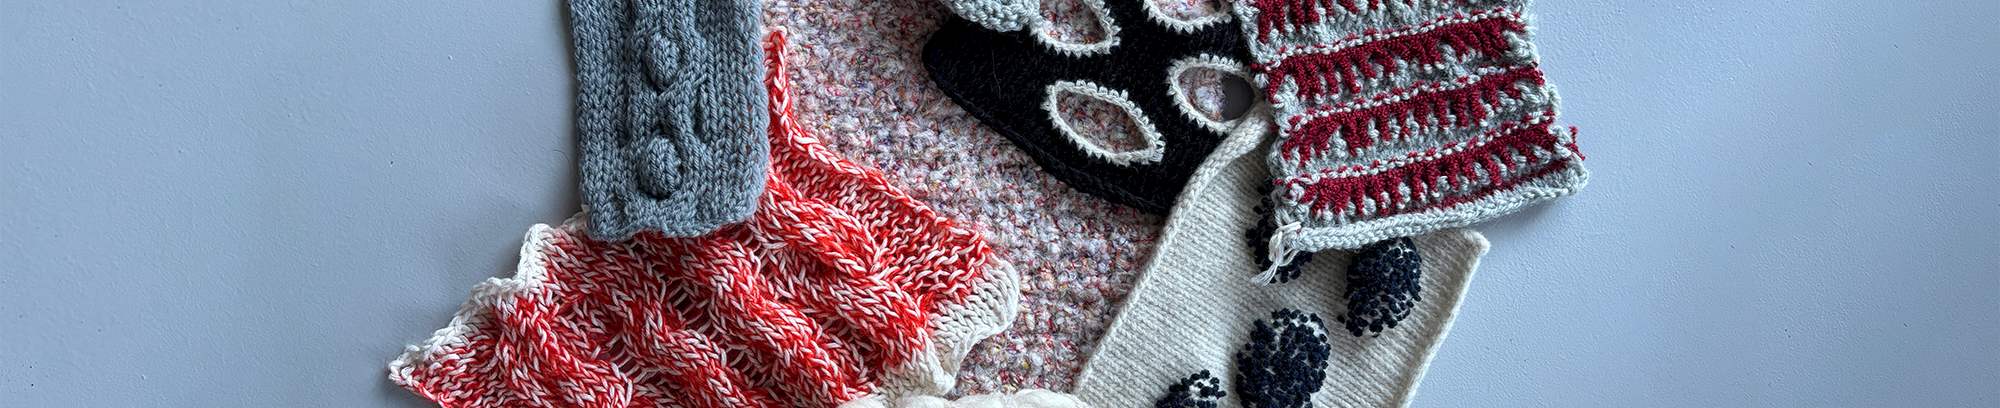 New knitting techniques – underviser Julie Behaegel